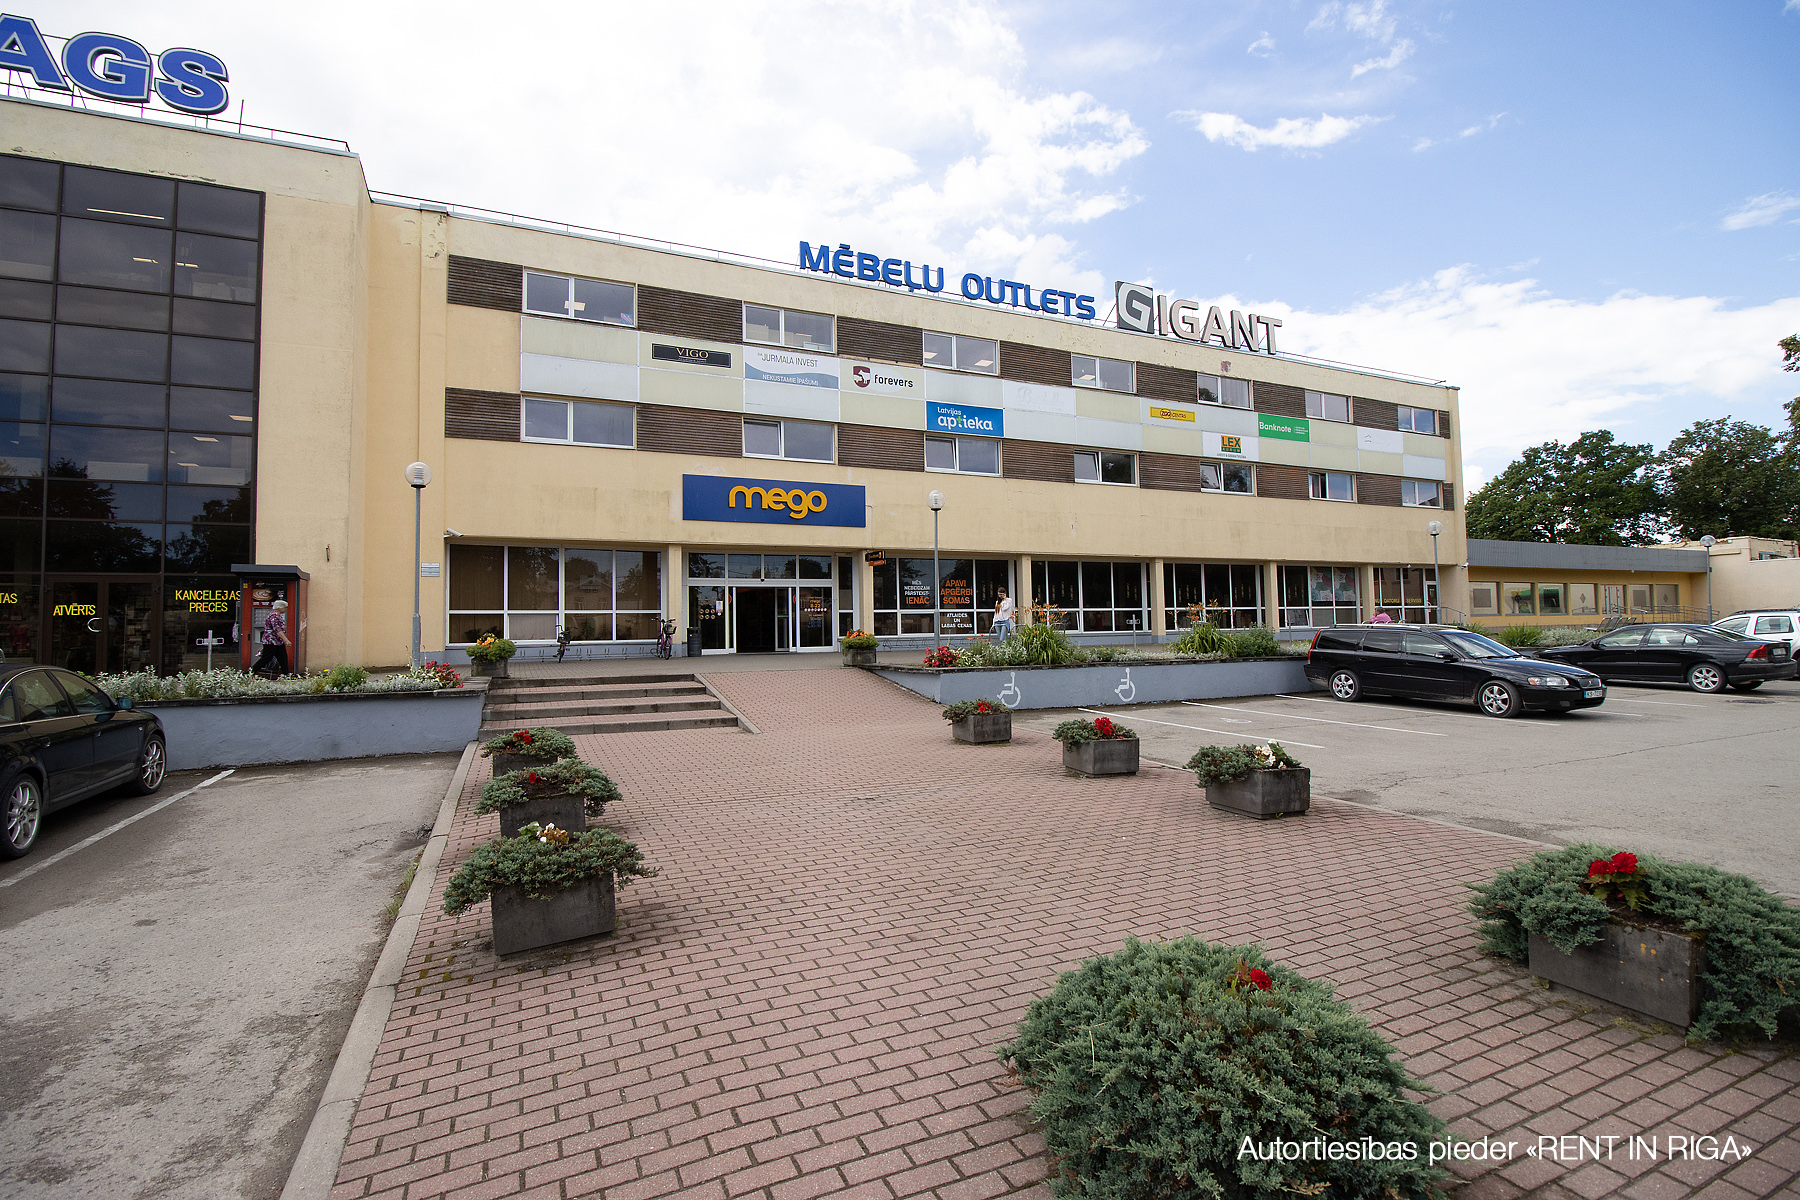 Retail premises for rent, Ventspils šoseja street - Image 1